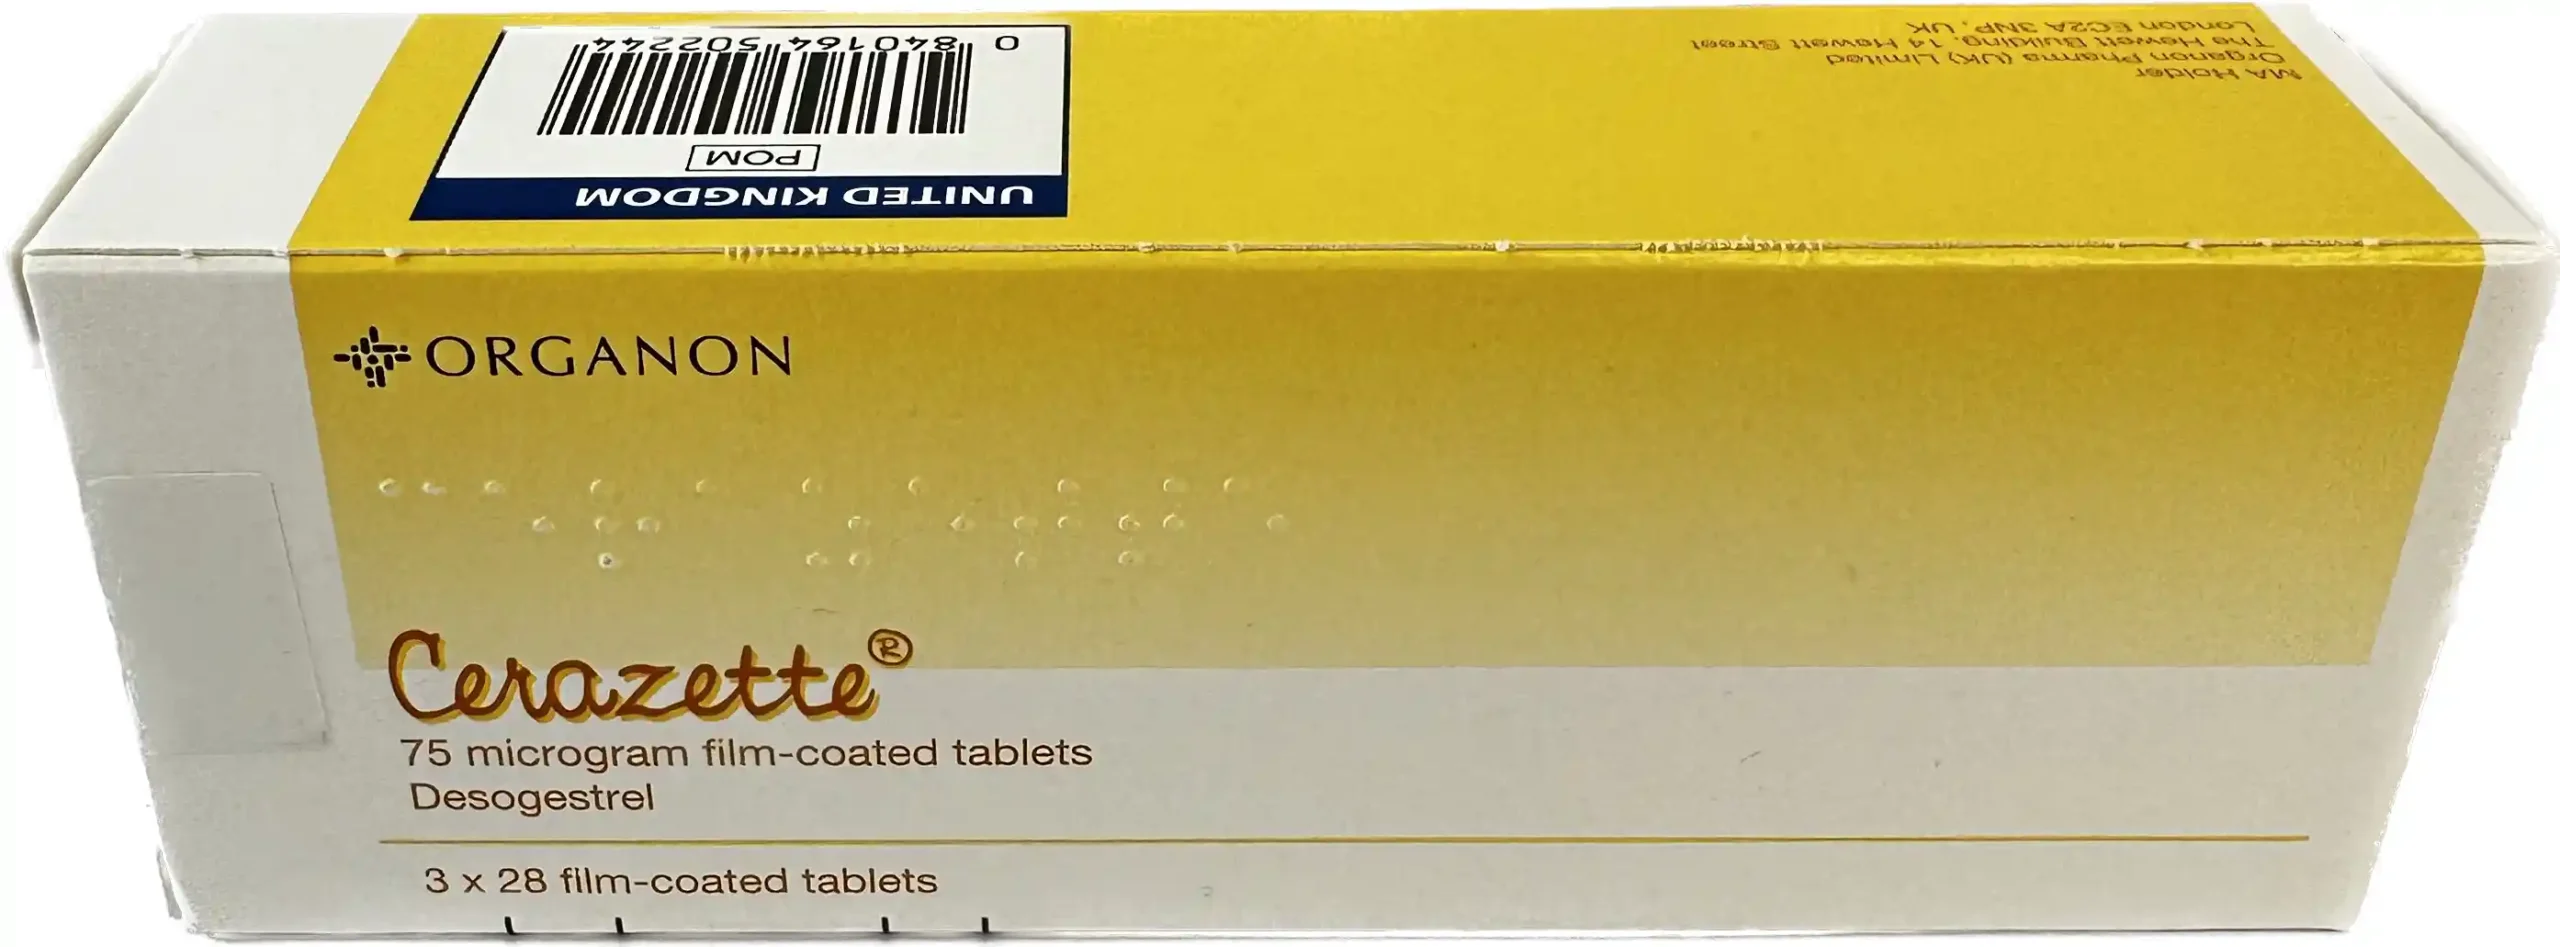 Cerazette Contraceptive Pills